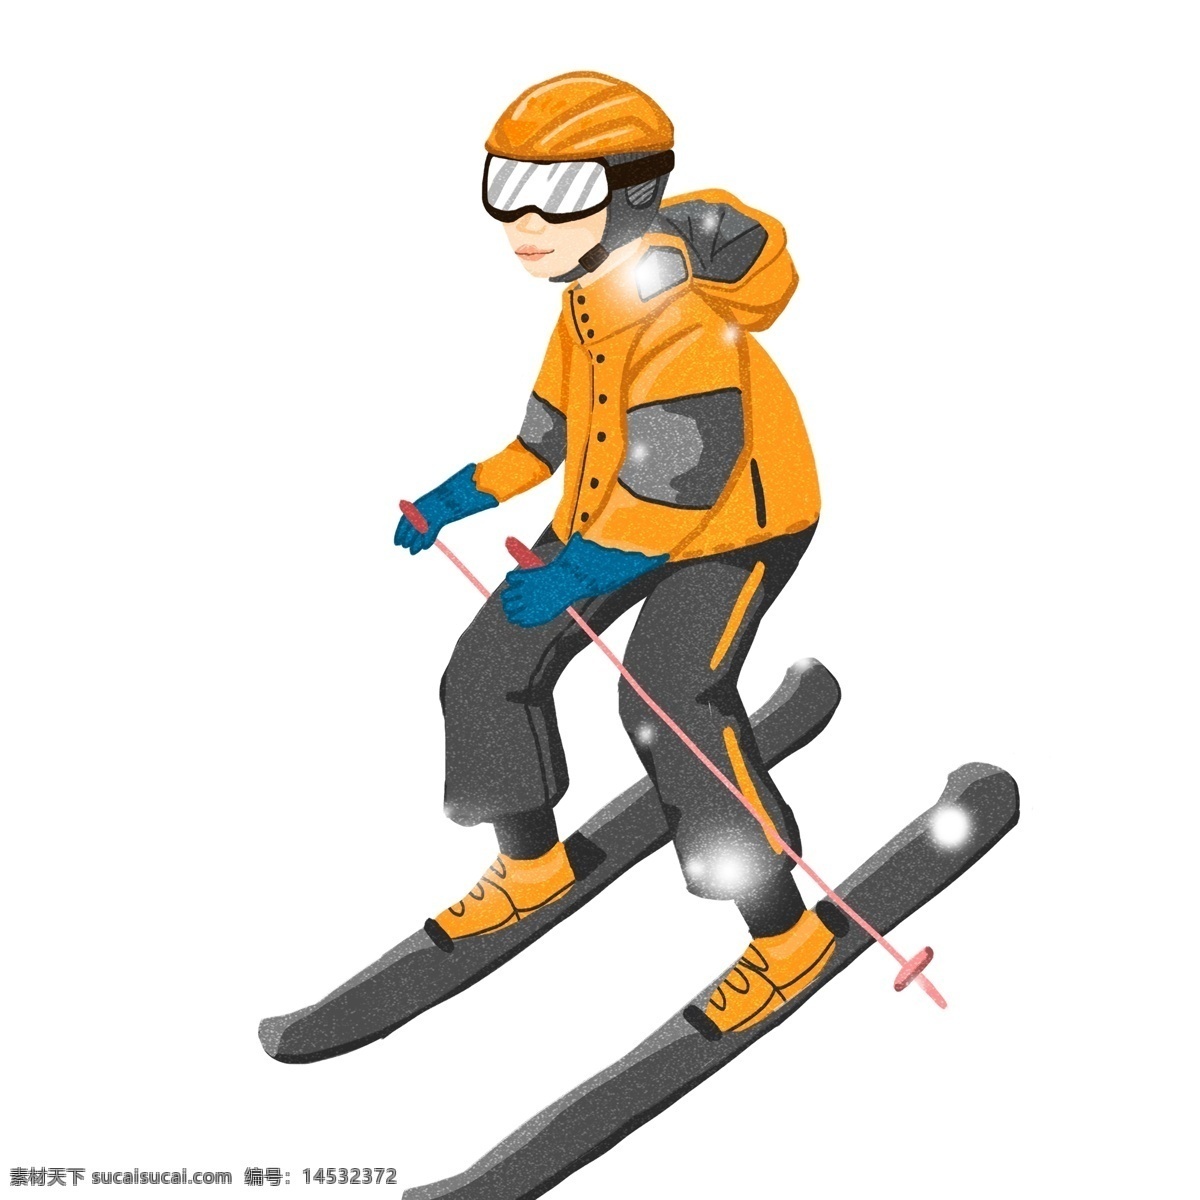 清新 冬日 开心 滑雪 少年 唯美 雪花 手绘 大雪 下雪天 人物设计